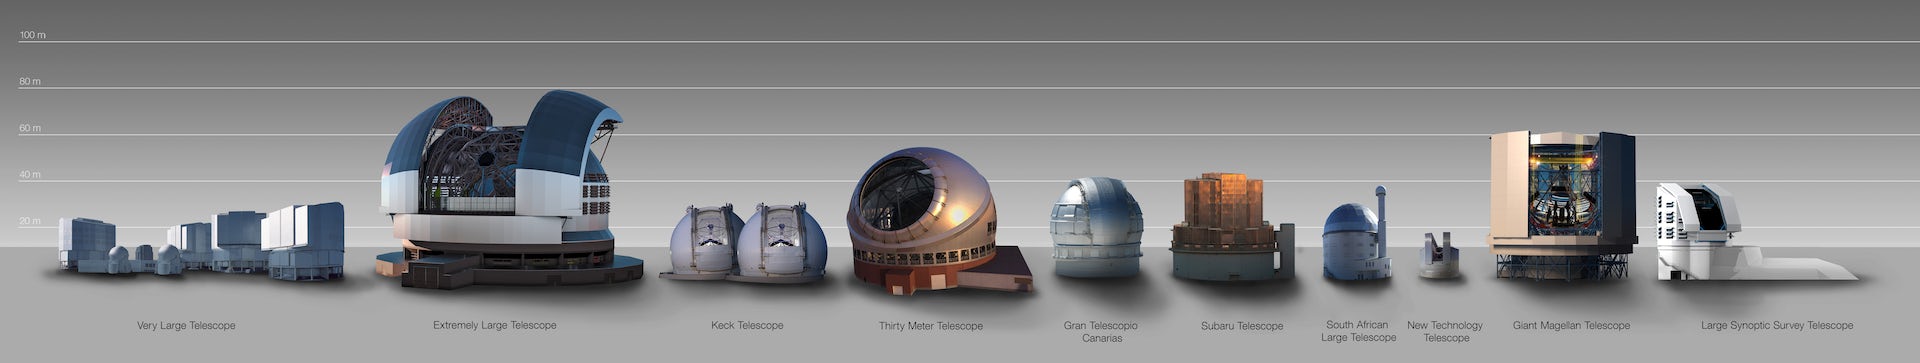 Comparación de tamaño entre el ELT y otras cúpulas telescópicas.